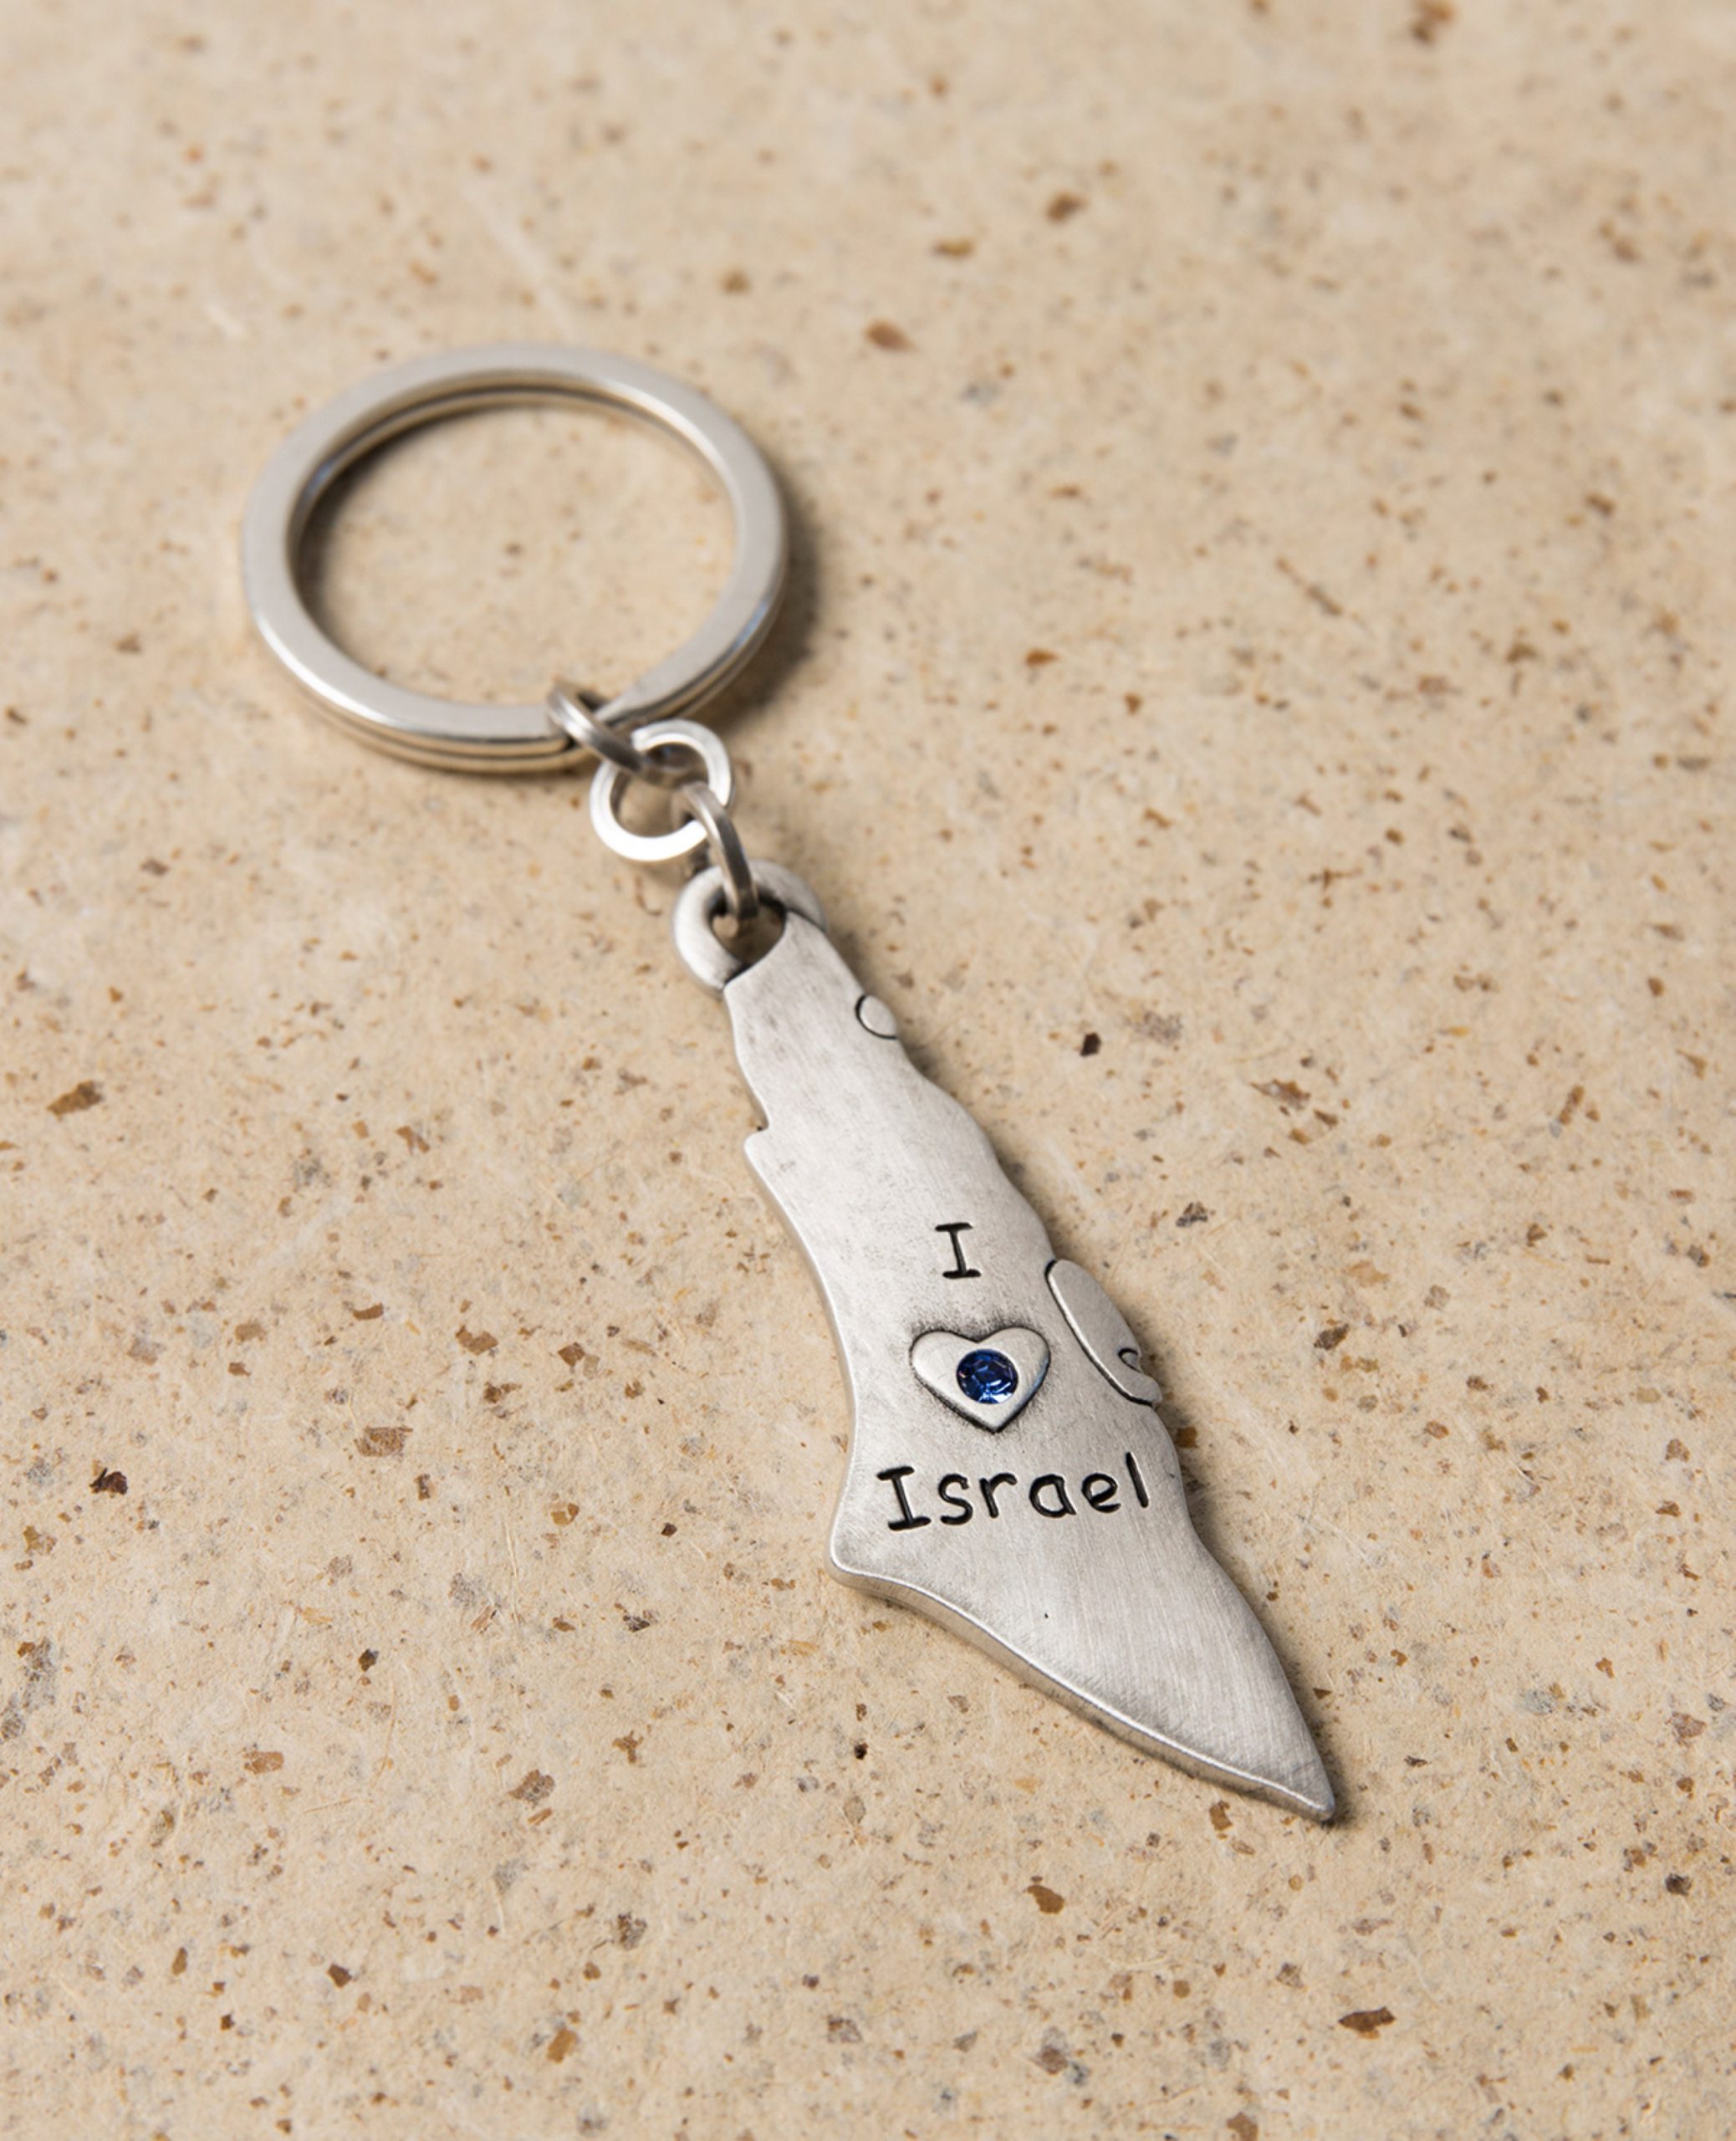 מחזיק מפתחות המעוצב כמפת ארץ ישראל